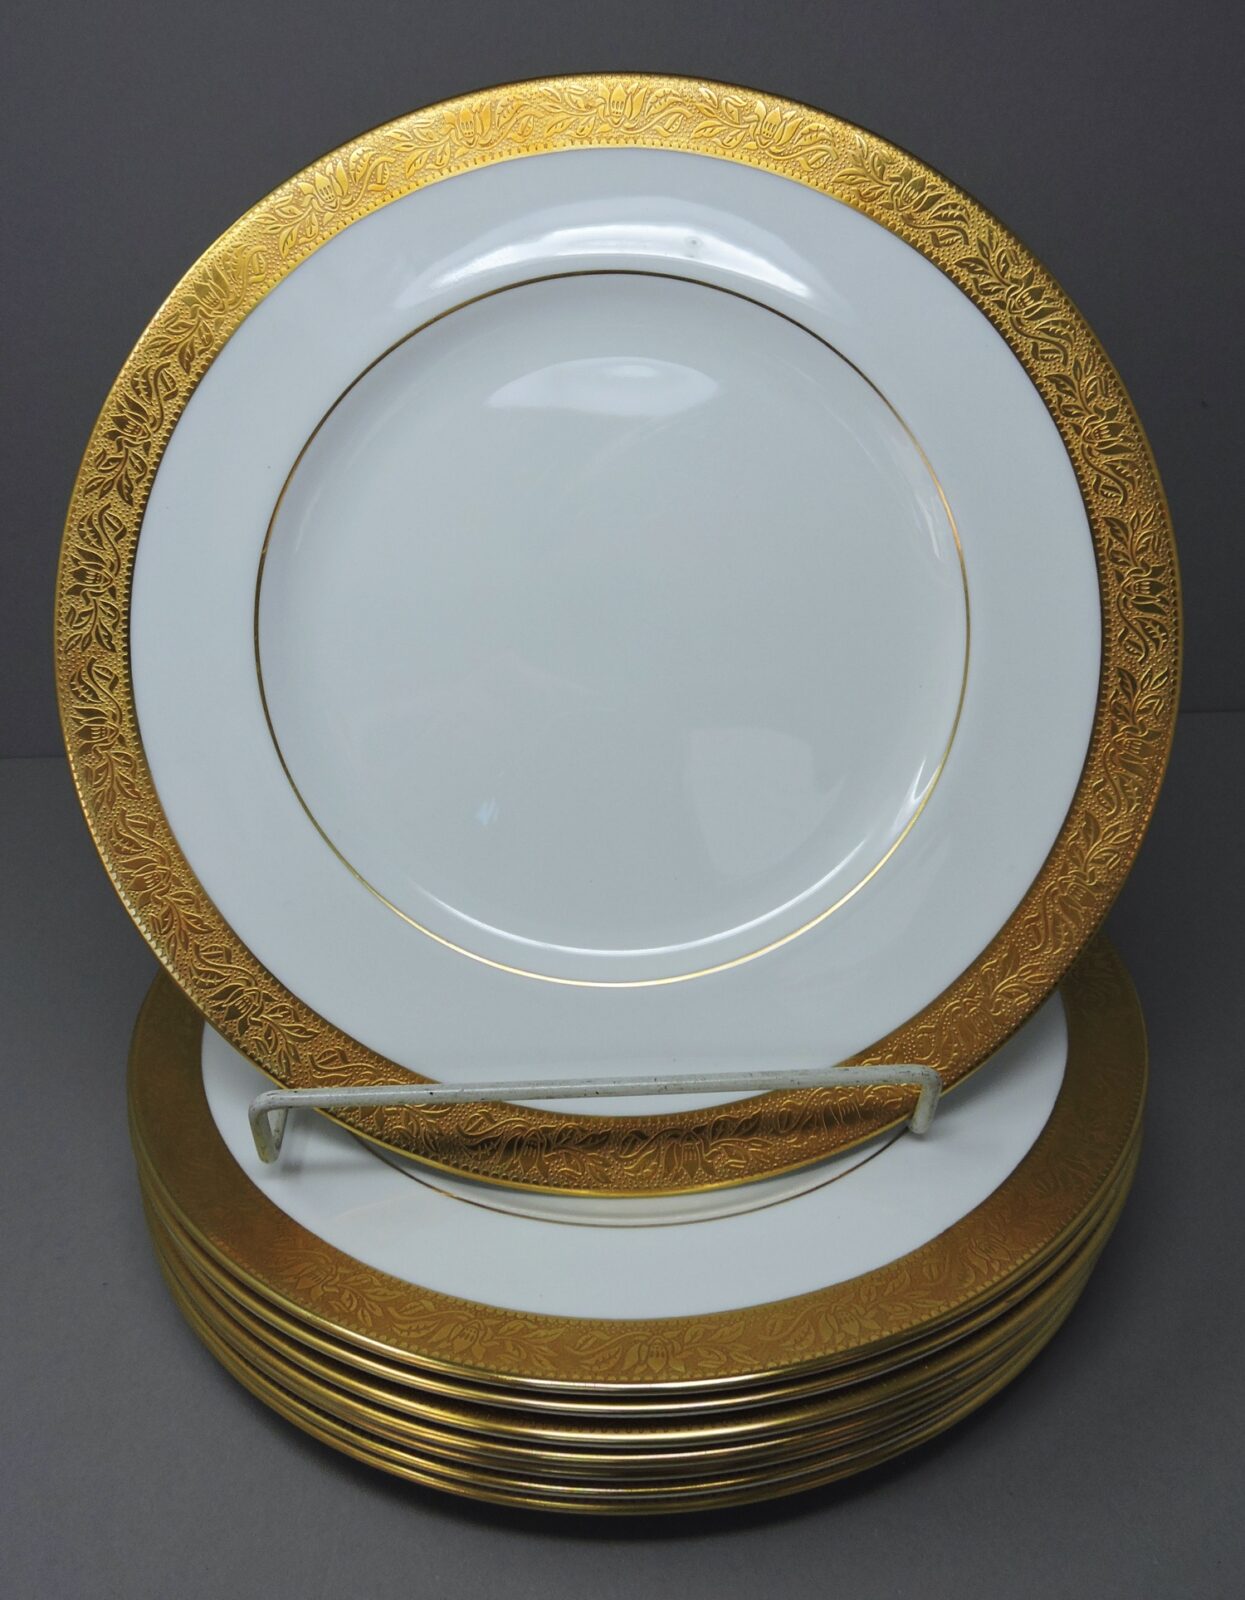 Wedgwood England Bone China Set of 8 Dinner Plates - 